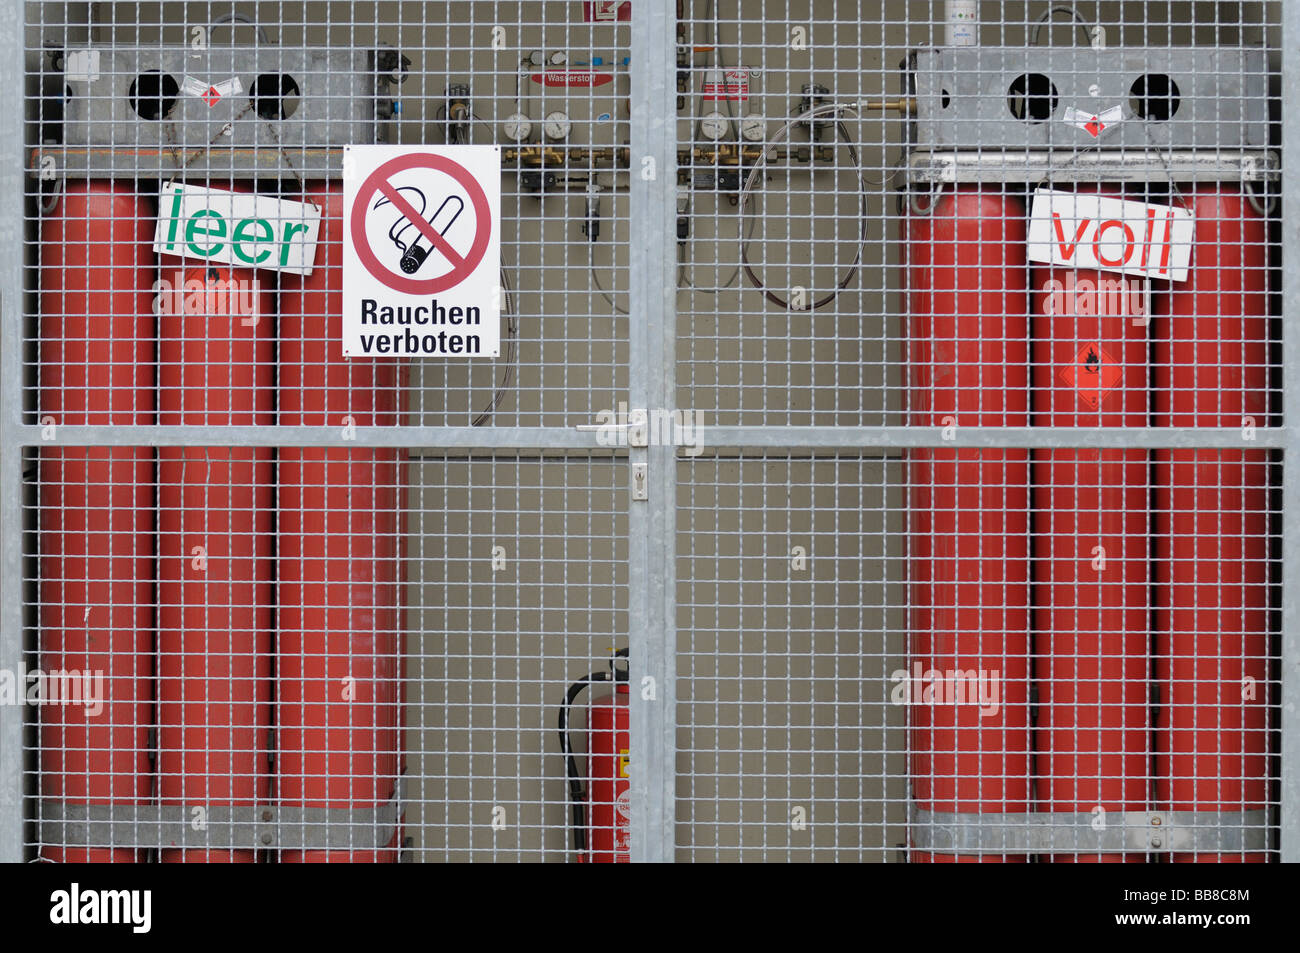 Wasserstofftankstelle nachfüllen, Draht leeren und vollen roten Gasflaschen hinter ein schützendes Netz, Armaturen und Messgeräte, Verbotszeichen Stockfoto